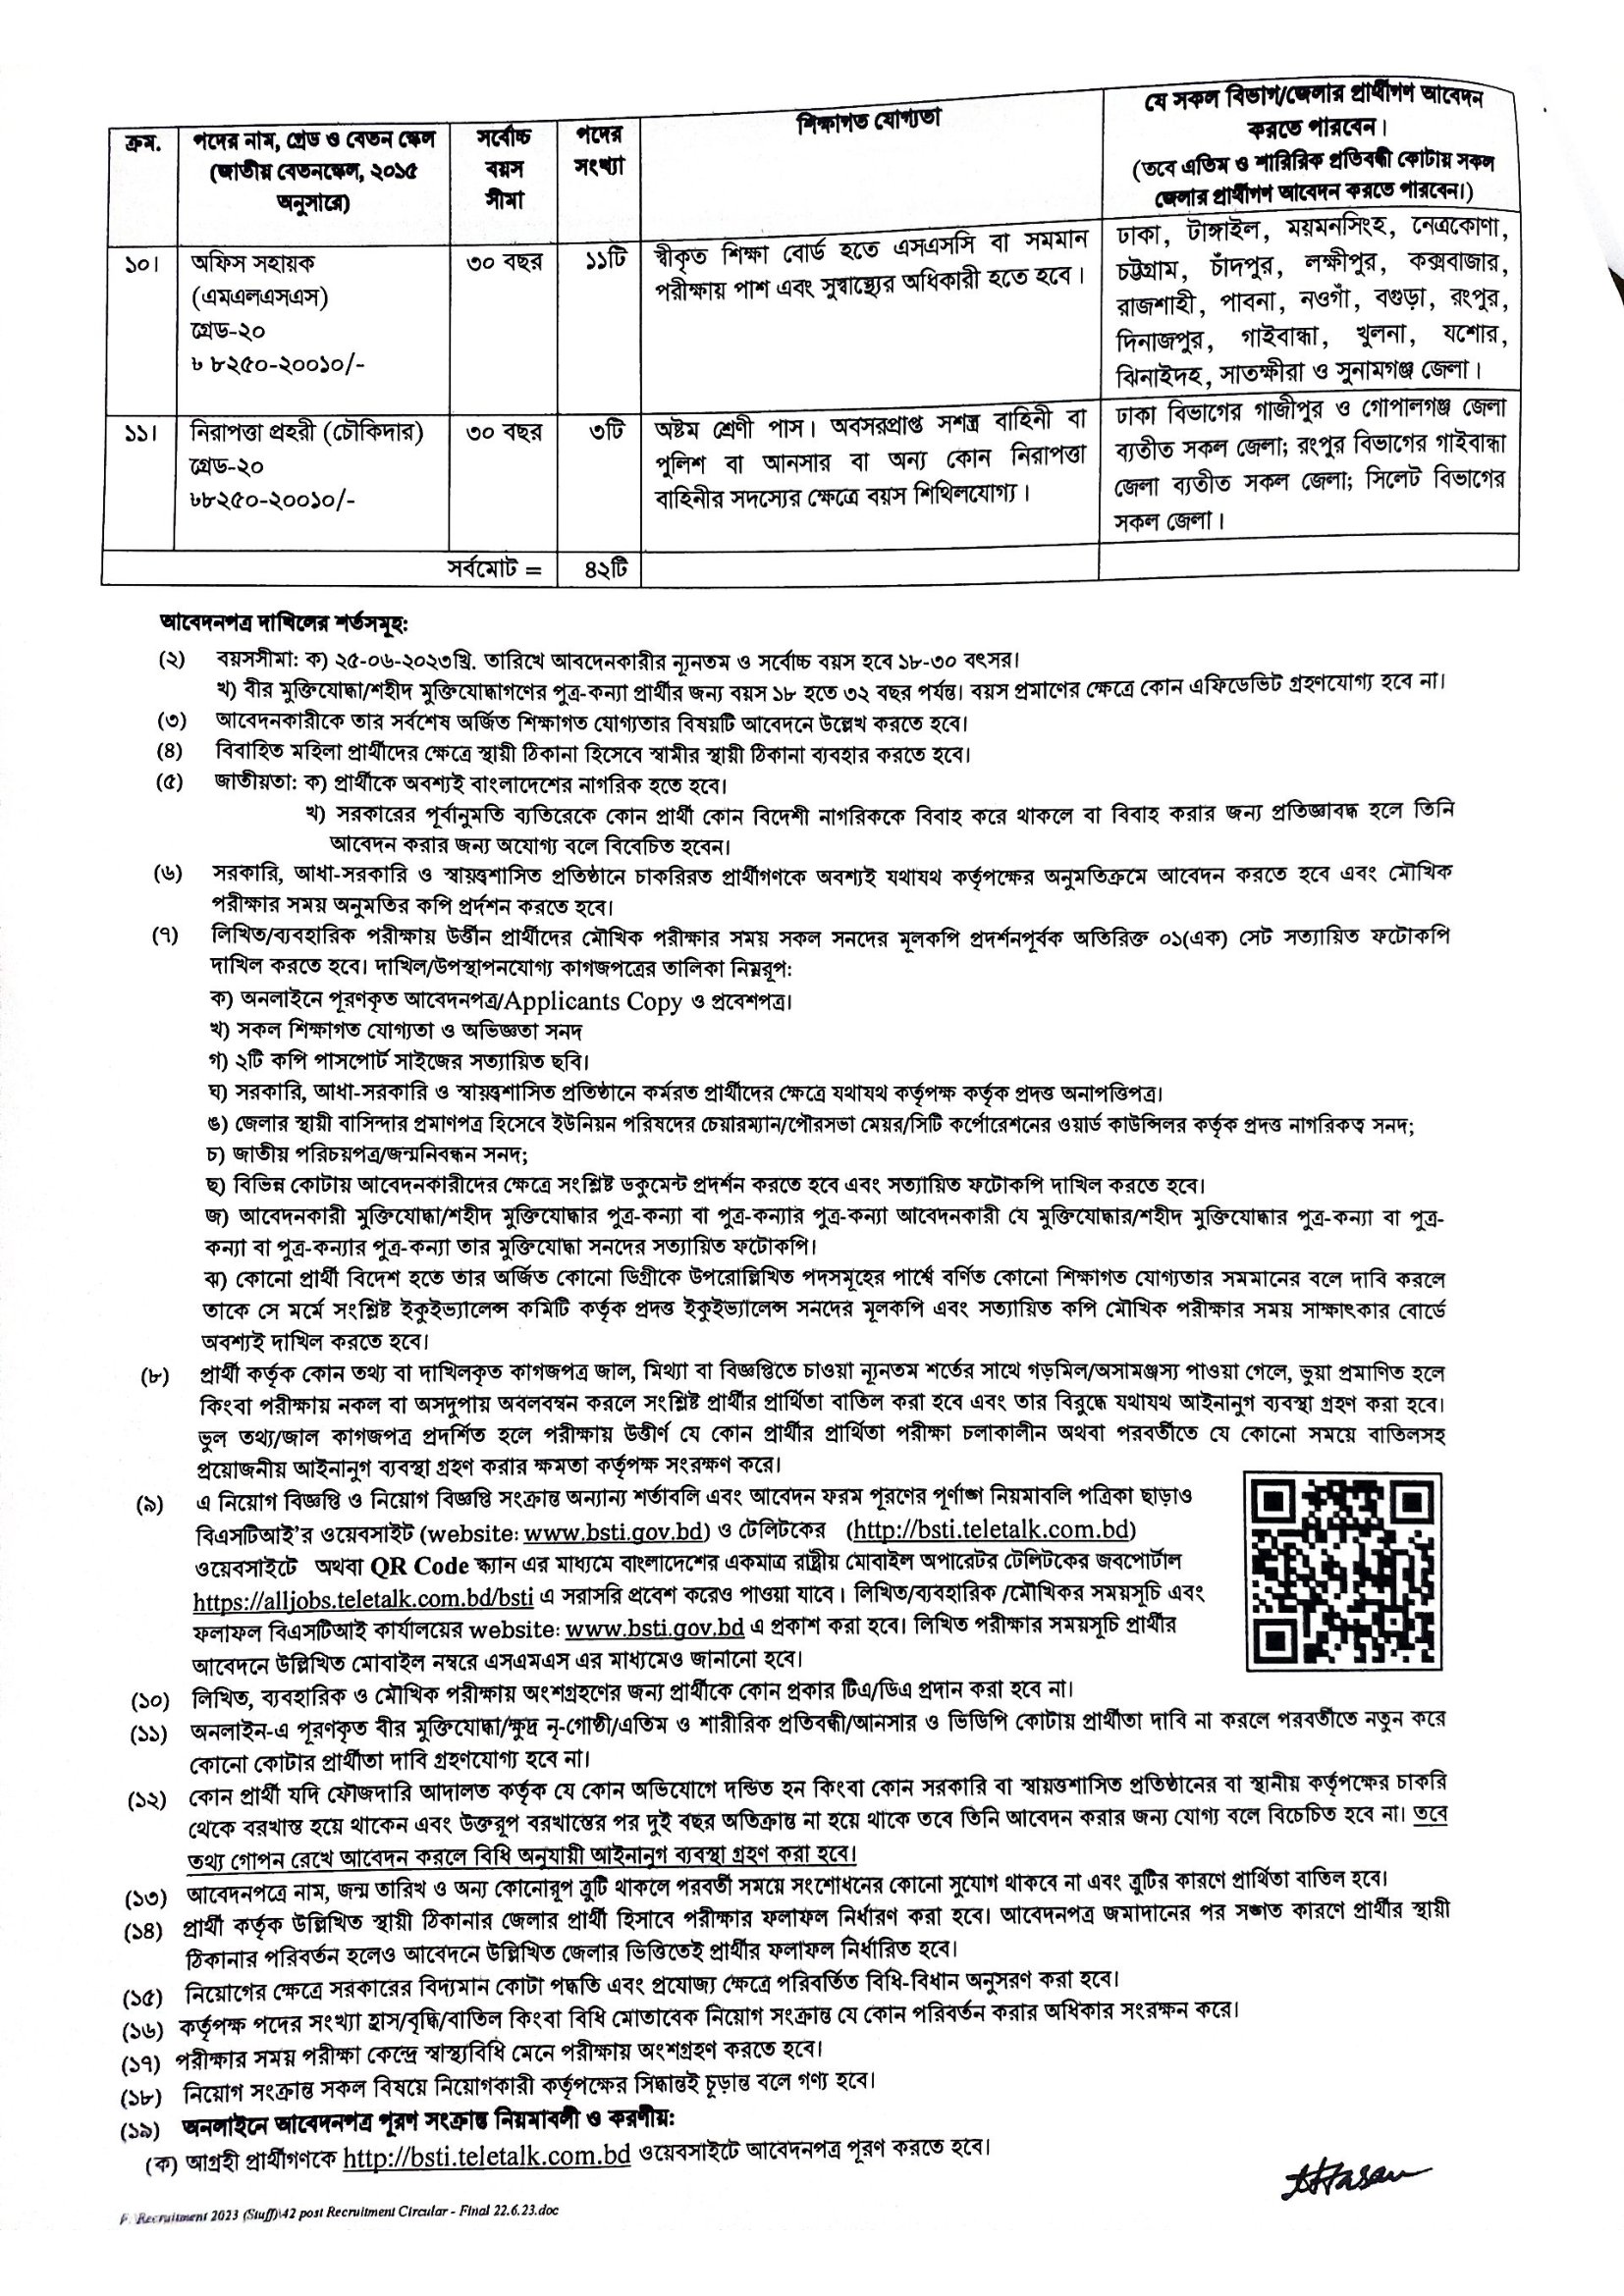 বাংলাদেশ স্ট্যান্ডার্ডস এন্ড টেস্টিং ইনস্টিটিউশন নিয়োগ ২০২৩ - BSTI Job circular 2023